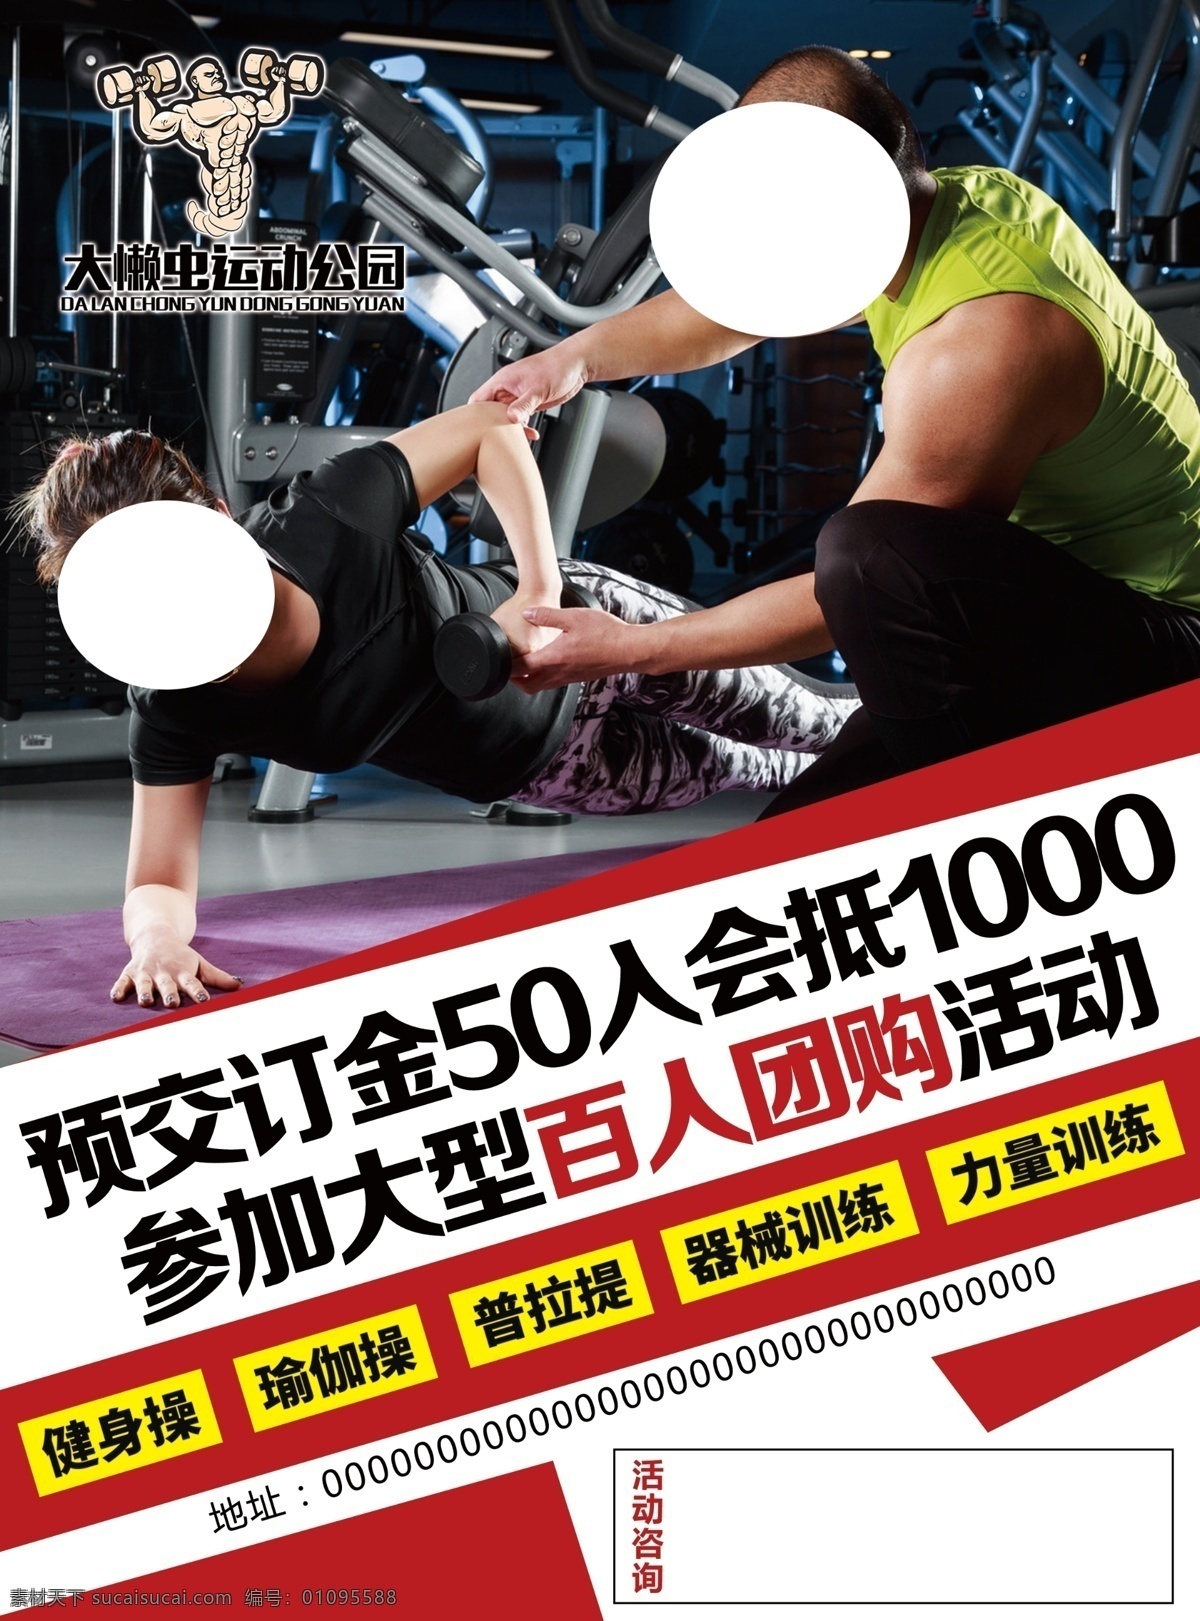 健身单页海报 健身单页 健身海报 健身人物 健身预售 健身房简介